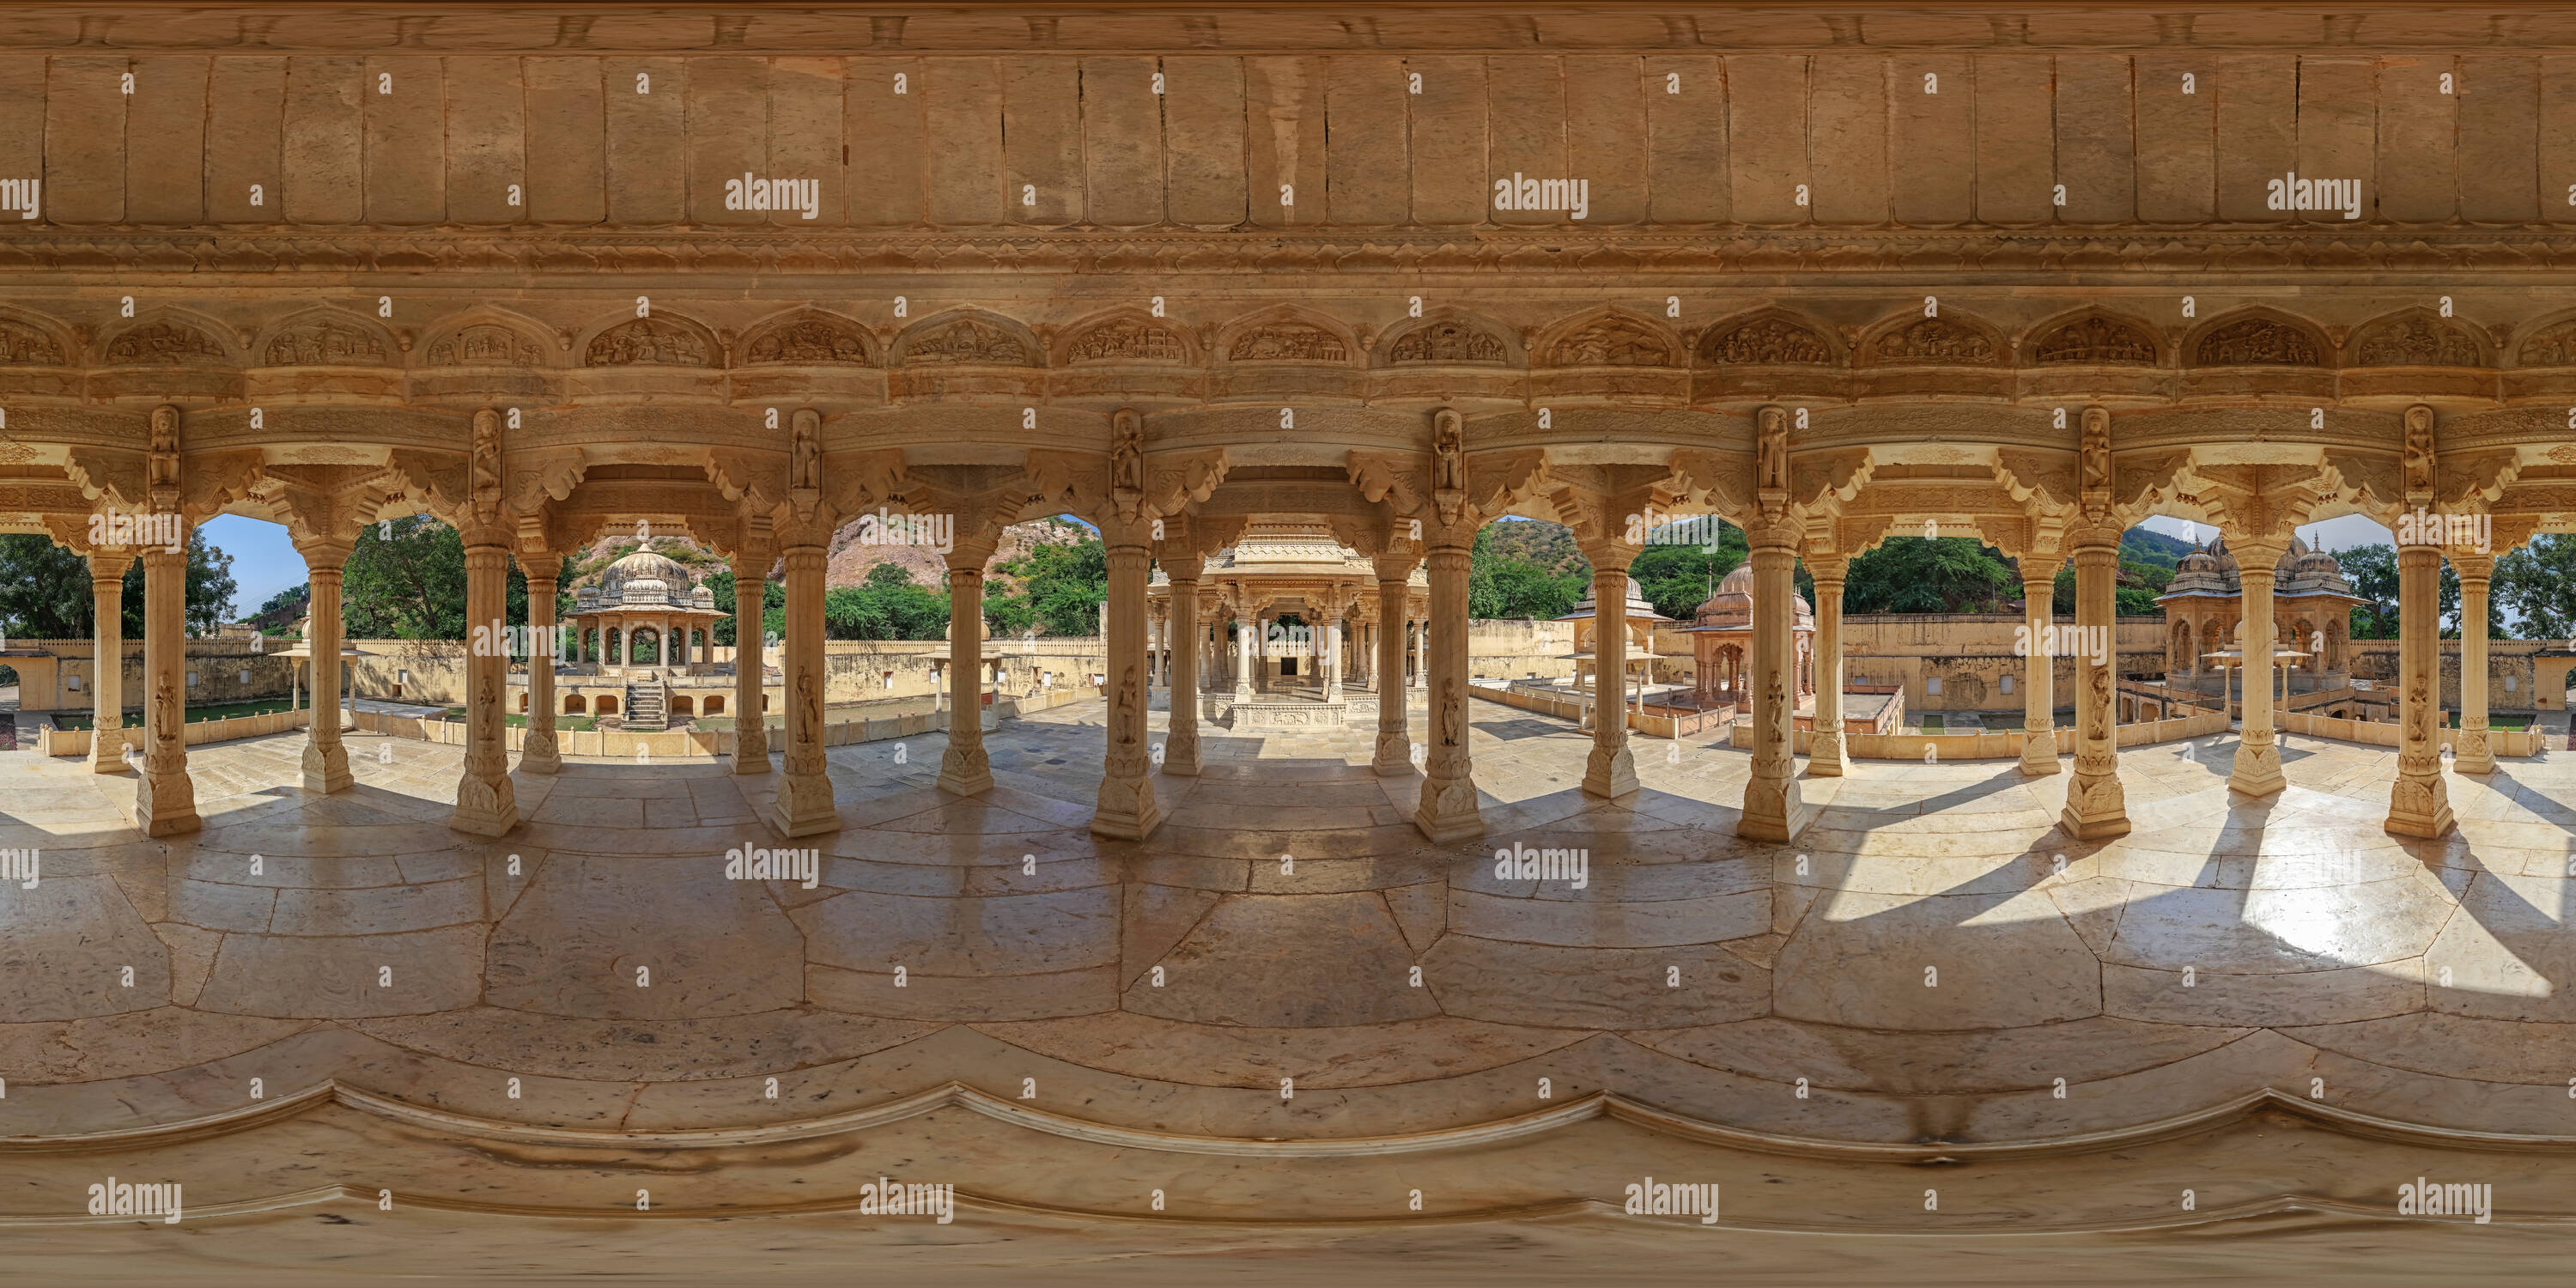 360 Grad Panorama Ansicht von Das ehrenmal von Maharaja Sawai Jai Singh - Gaitor - Jaipur - Brahampuri